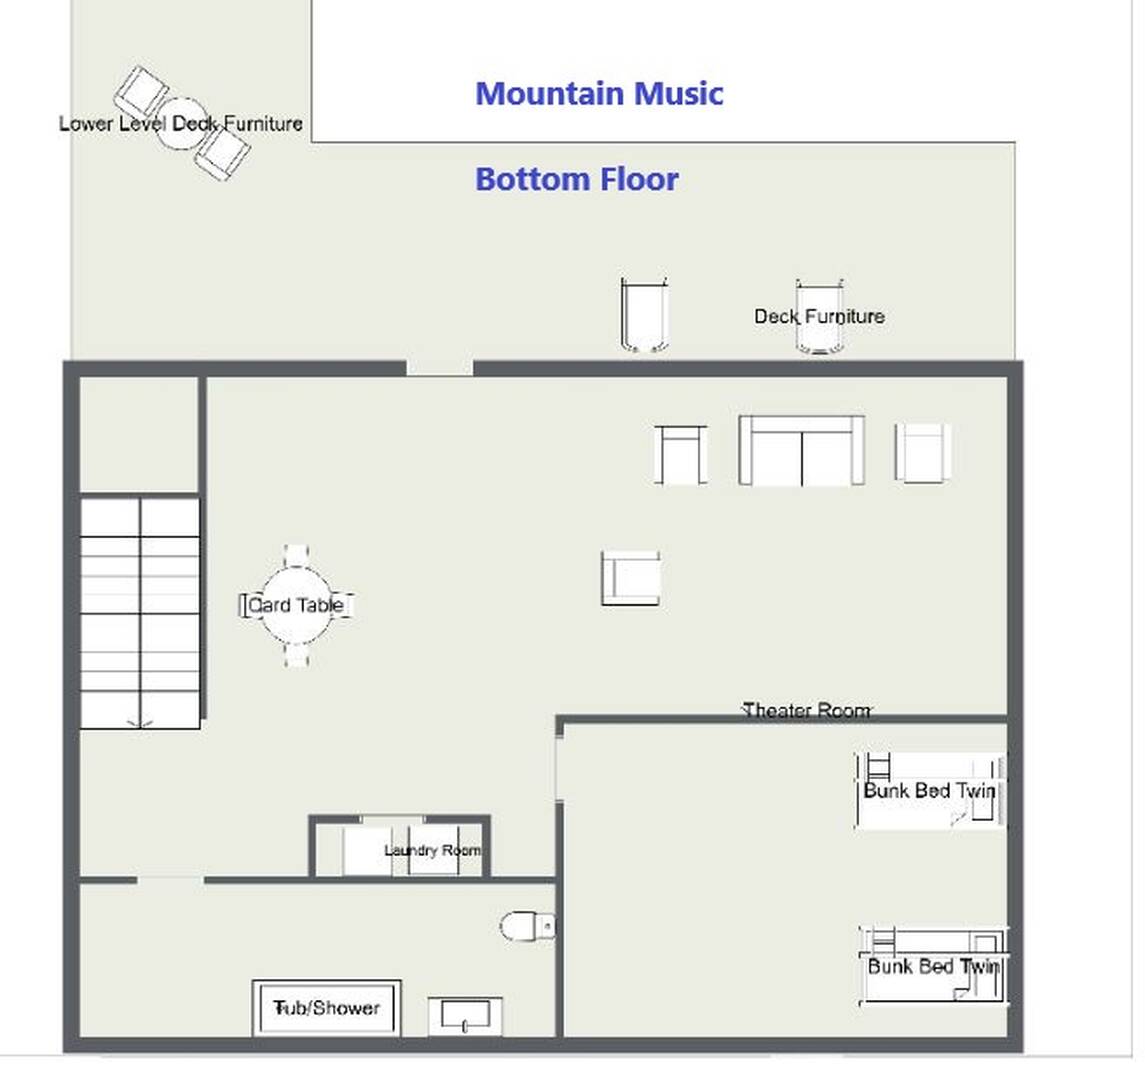 Mountain Music floorplan